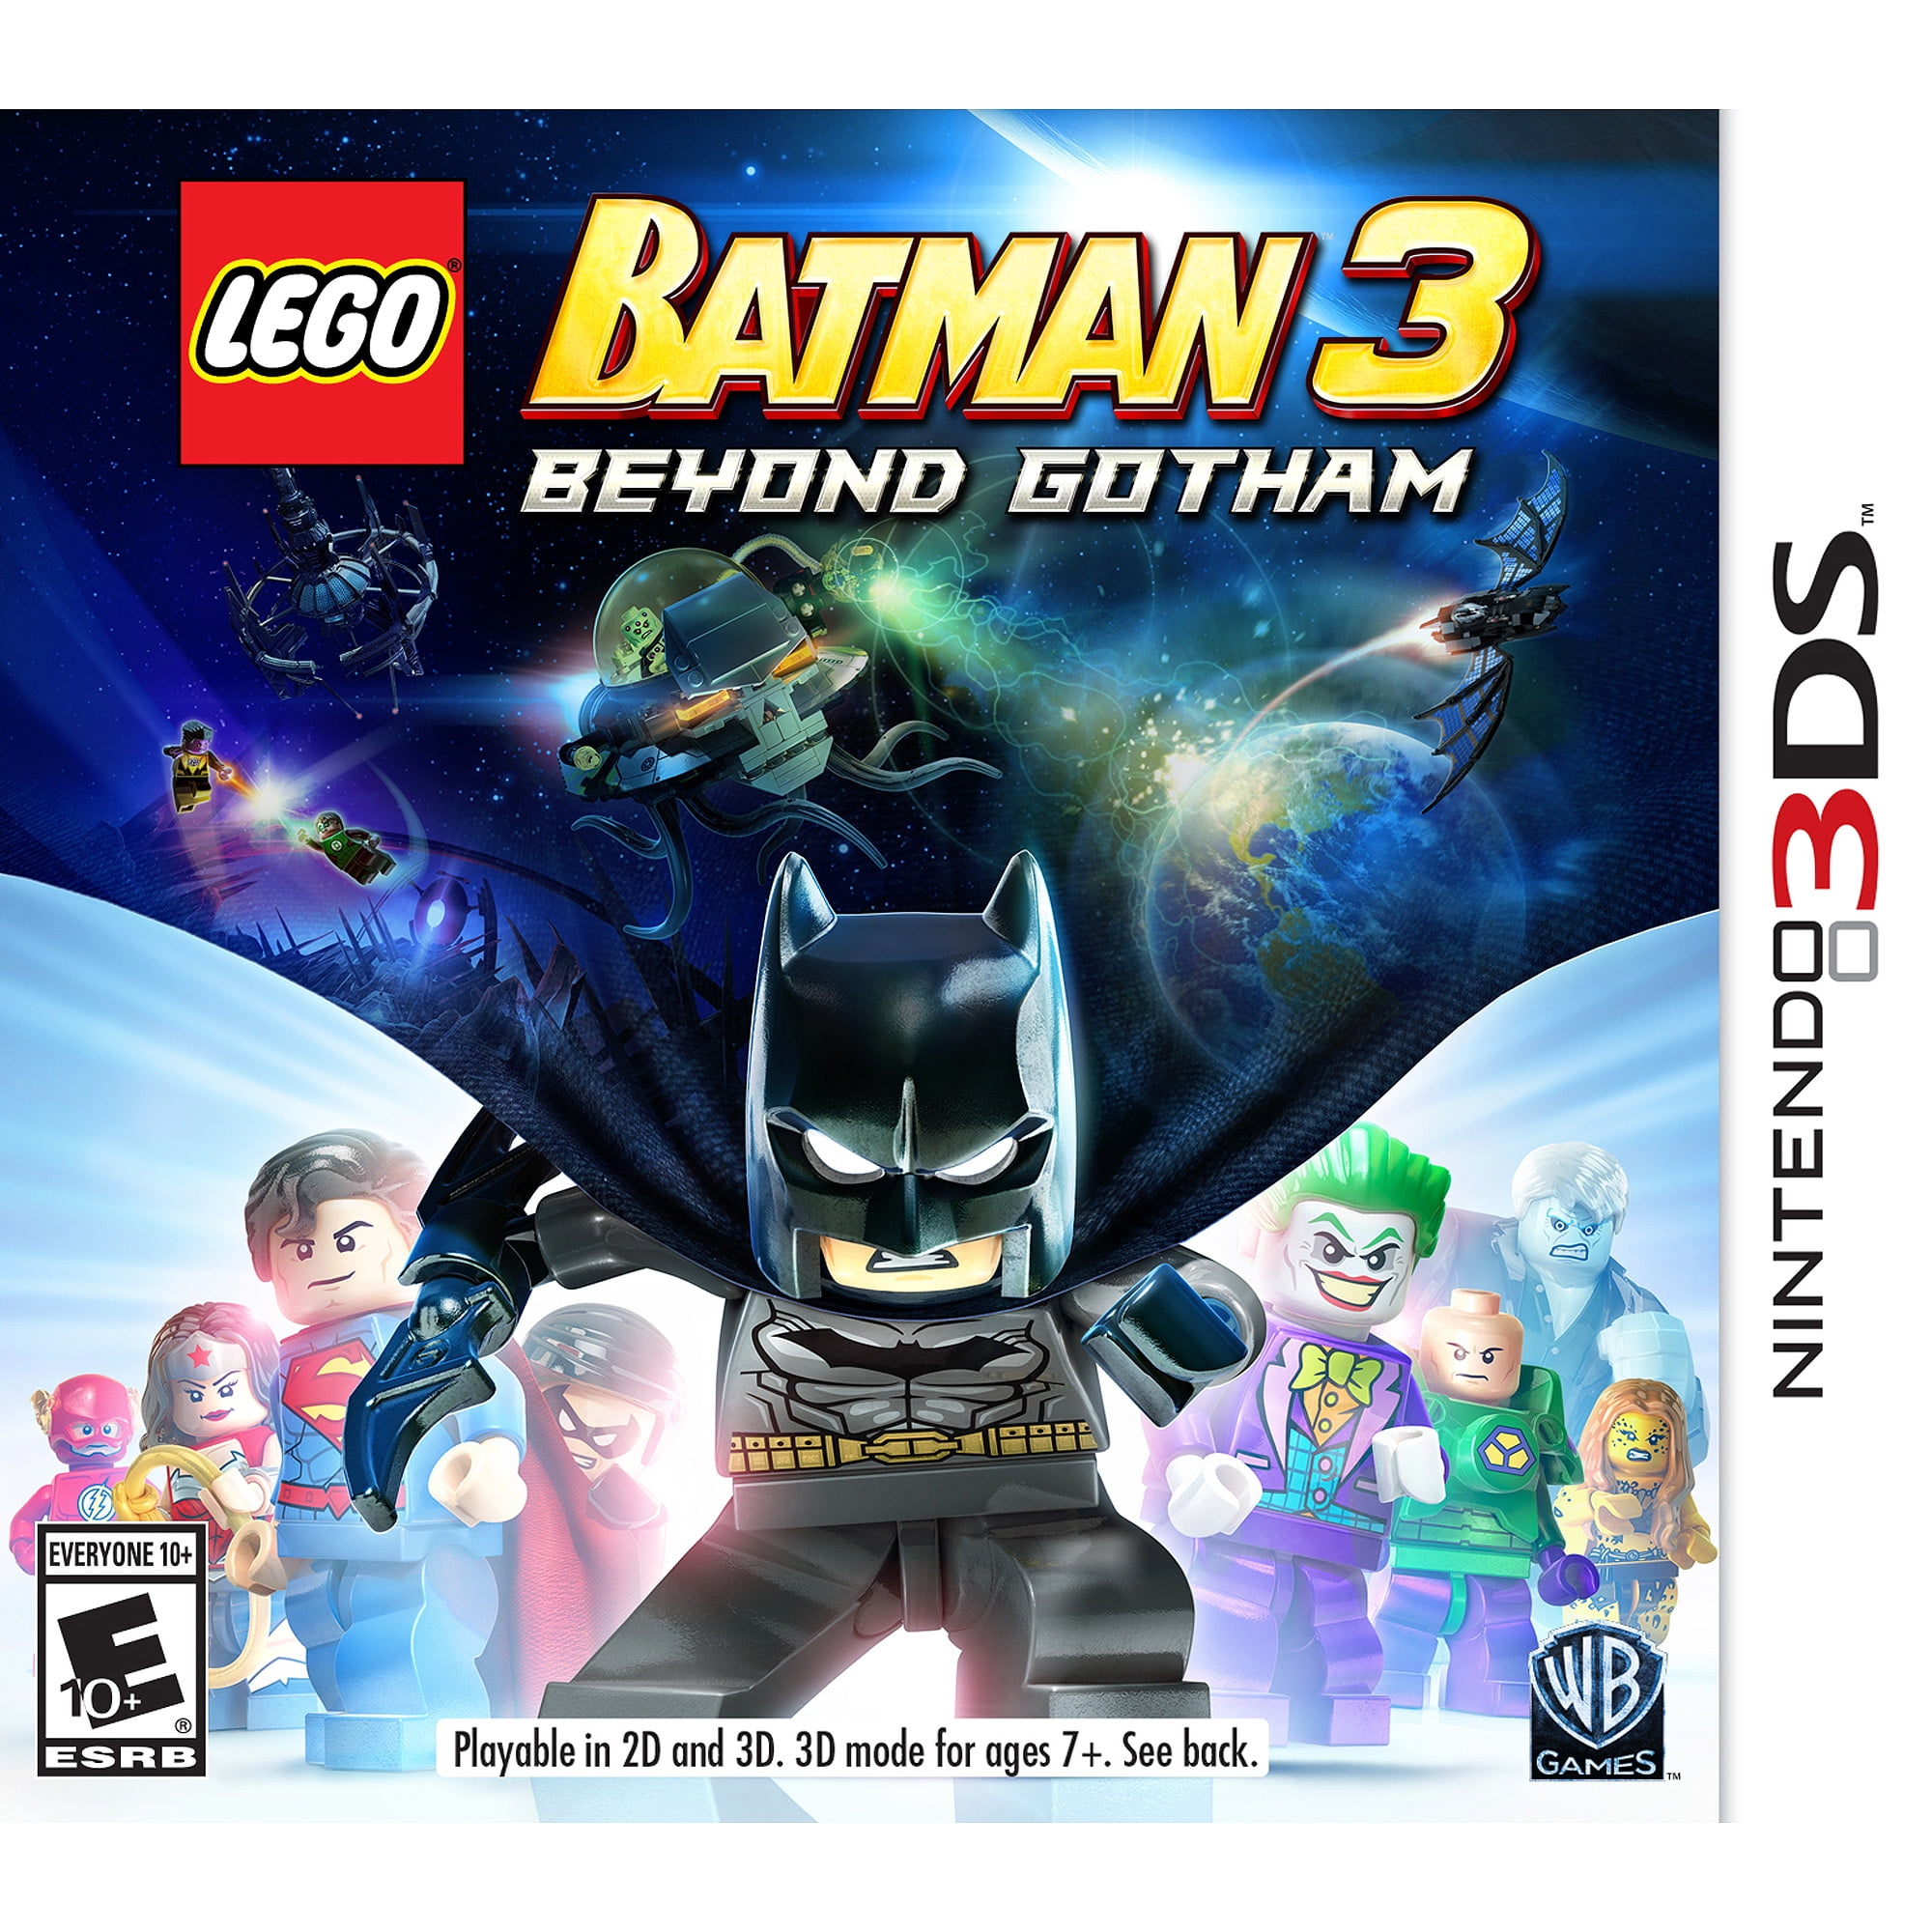 radar Stedord Avl LEGO Batman 3: Beyond Gotham, Warner Bros, PlayStation 4, 883929427406 -  Walmart.com